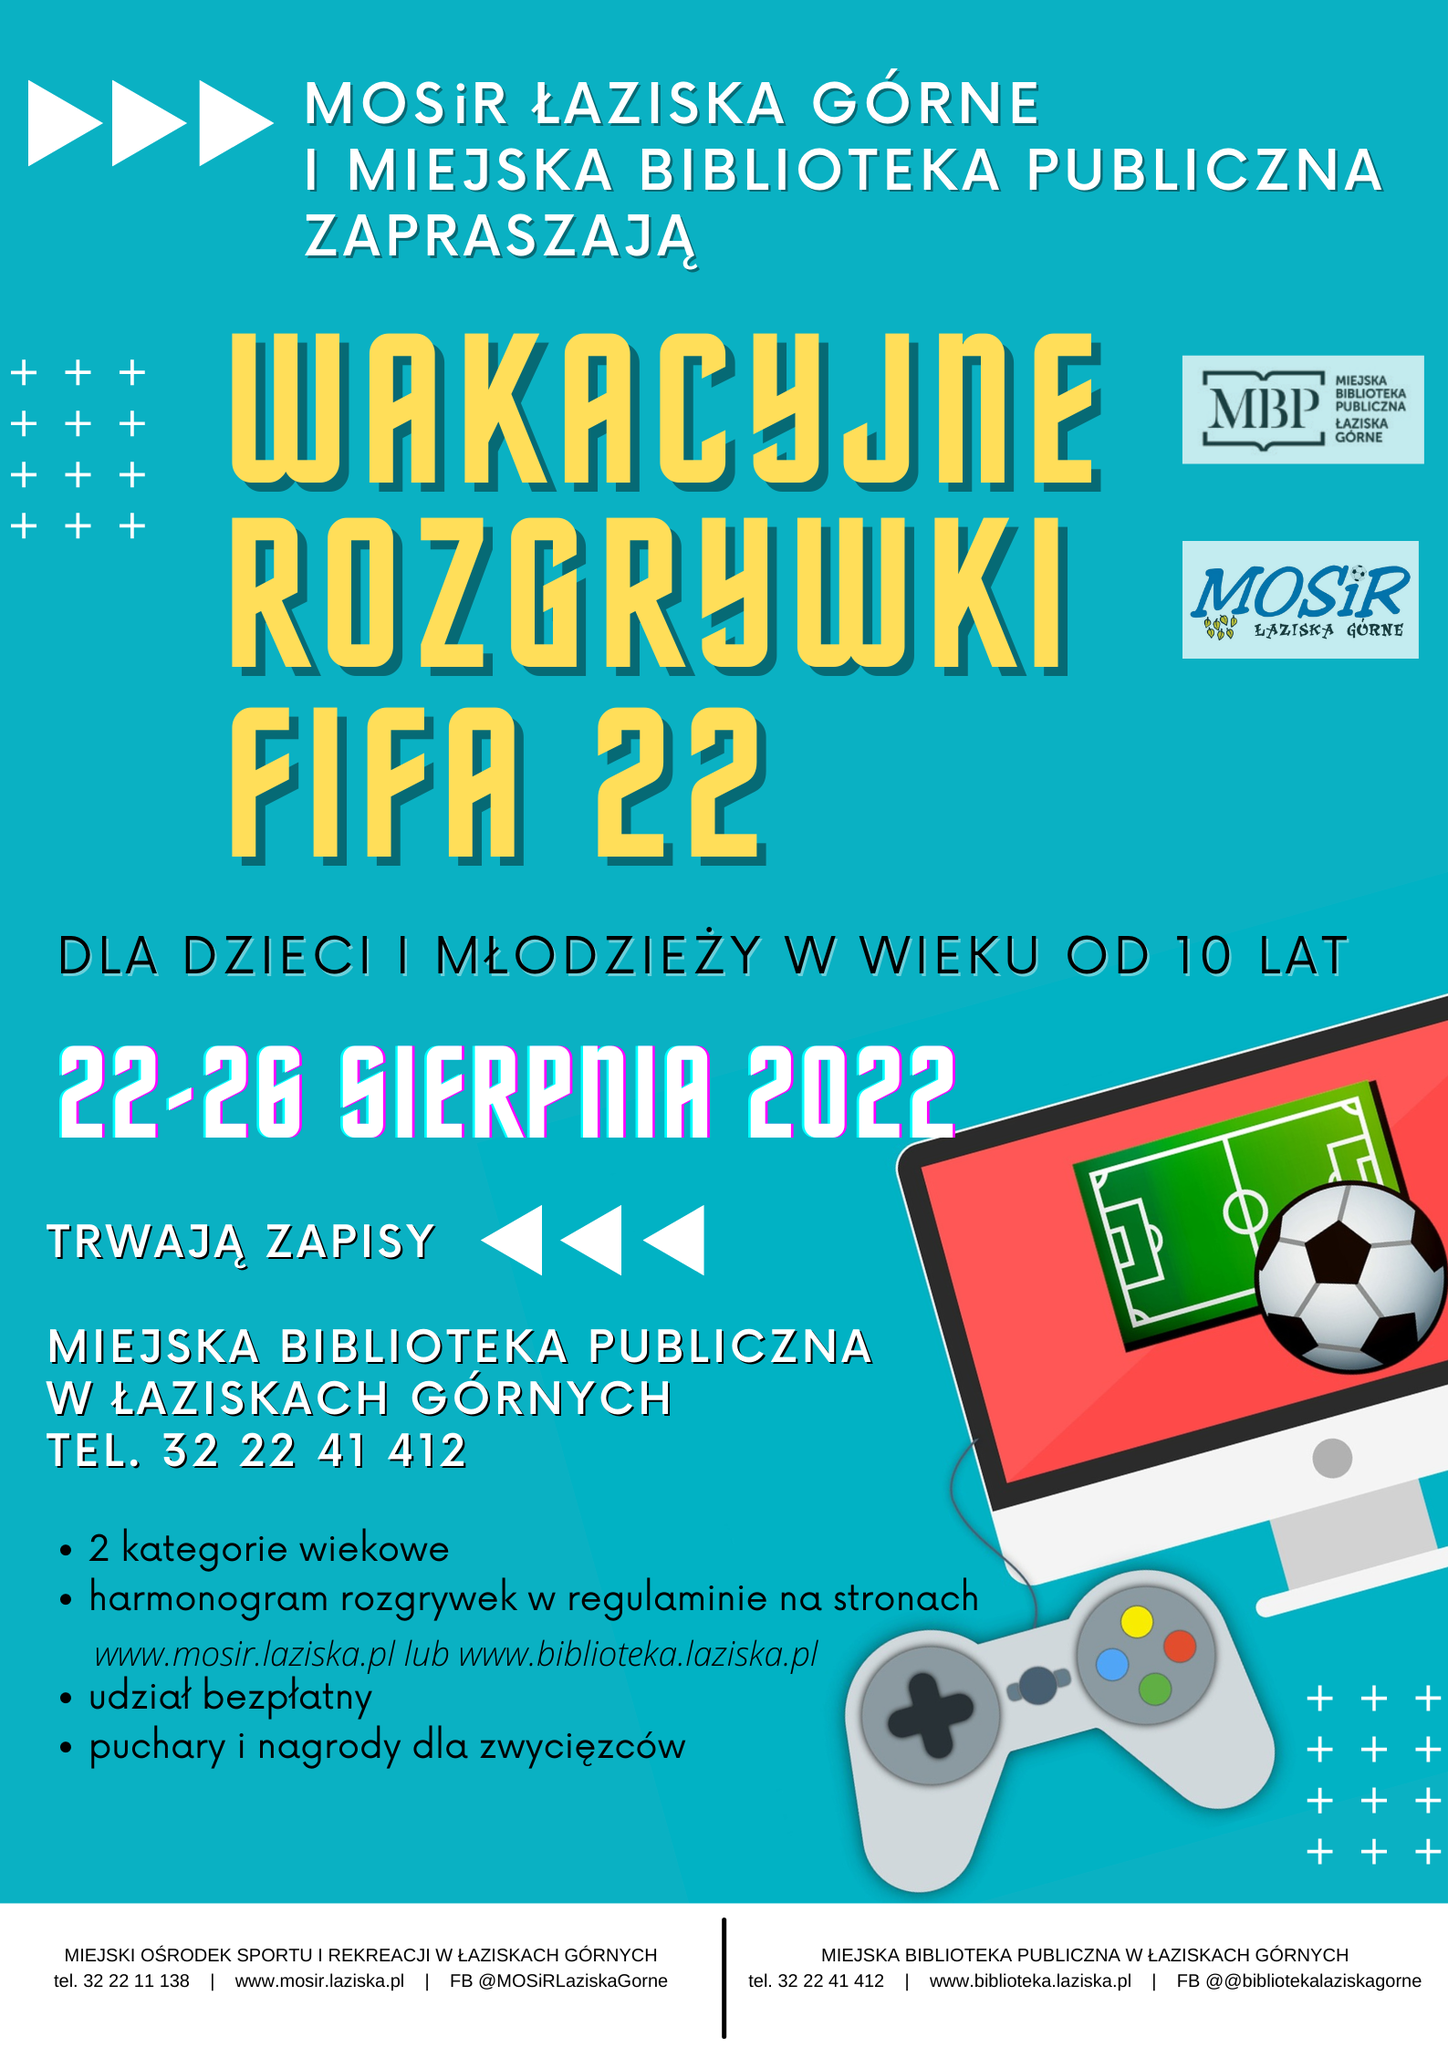 Wakacyjne rozgrywki FIFA 22